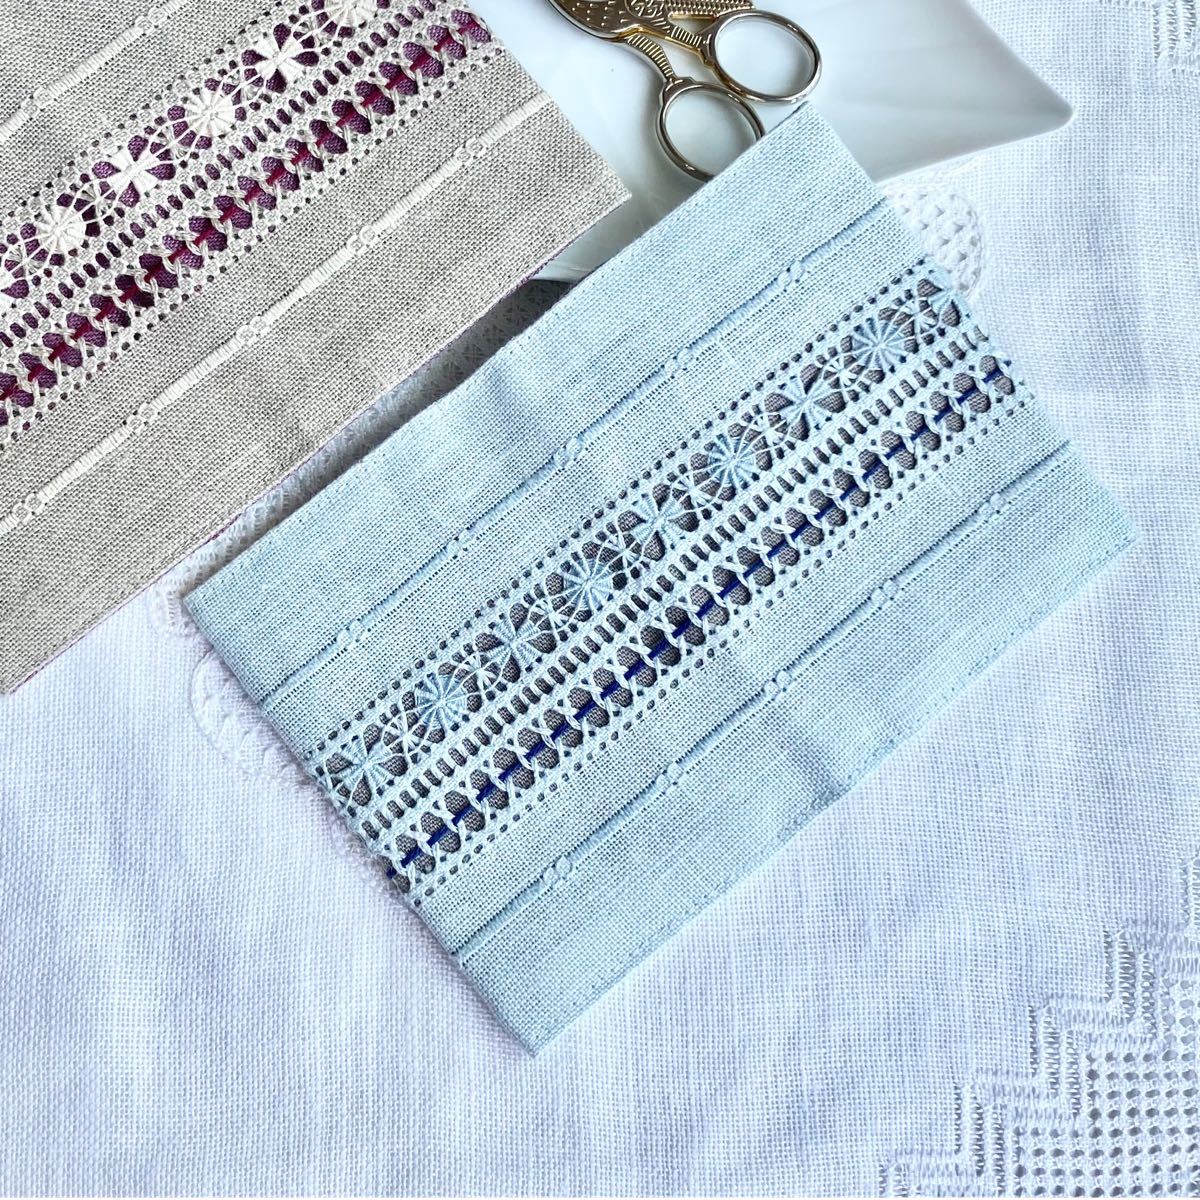 【刺繍キット】《B.ライトブルー》ドロンワーク刺繍の カードケース 白糸刺繍 １セット